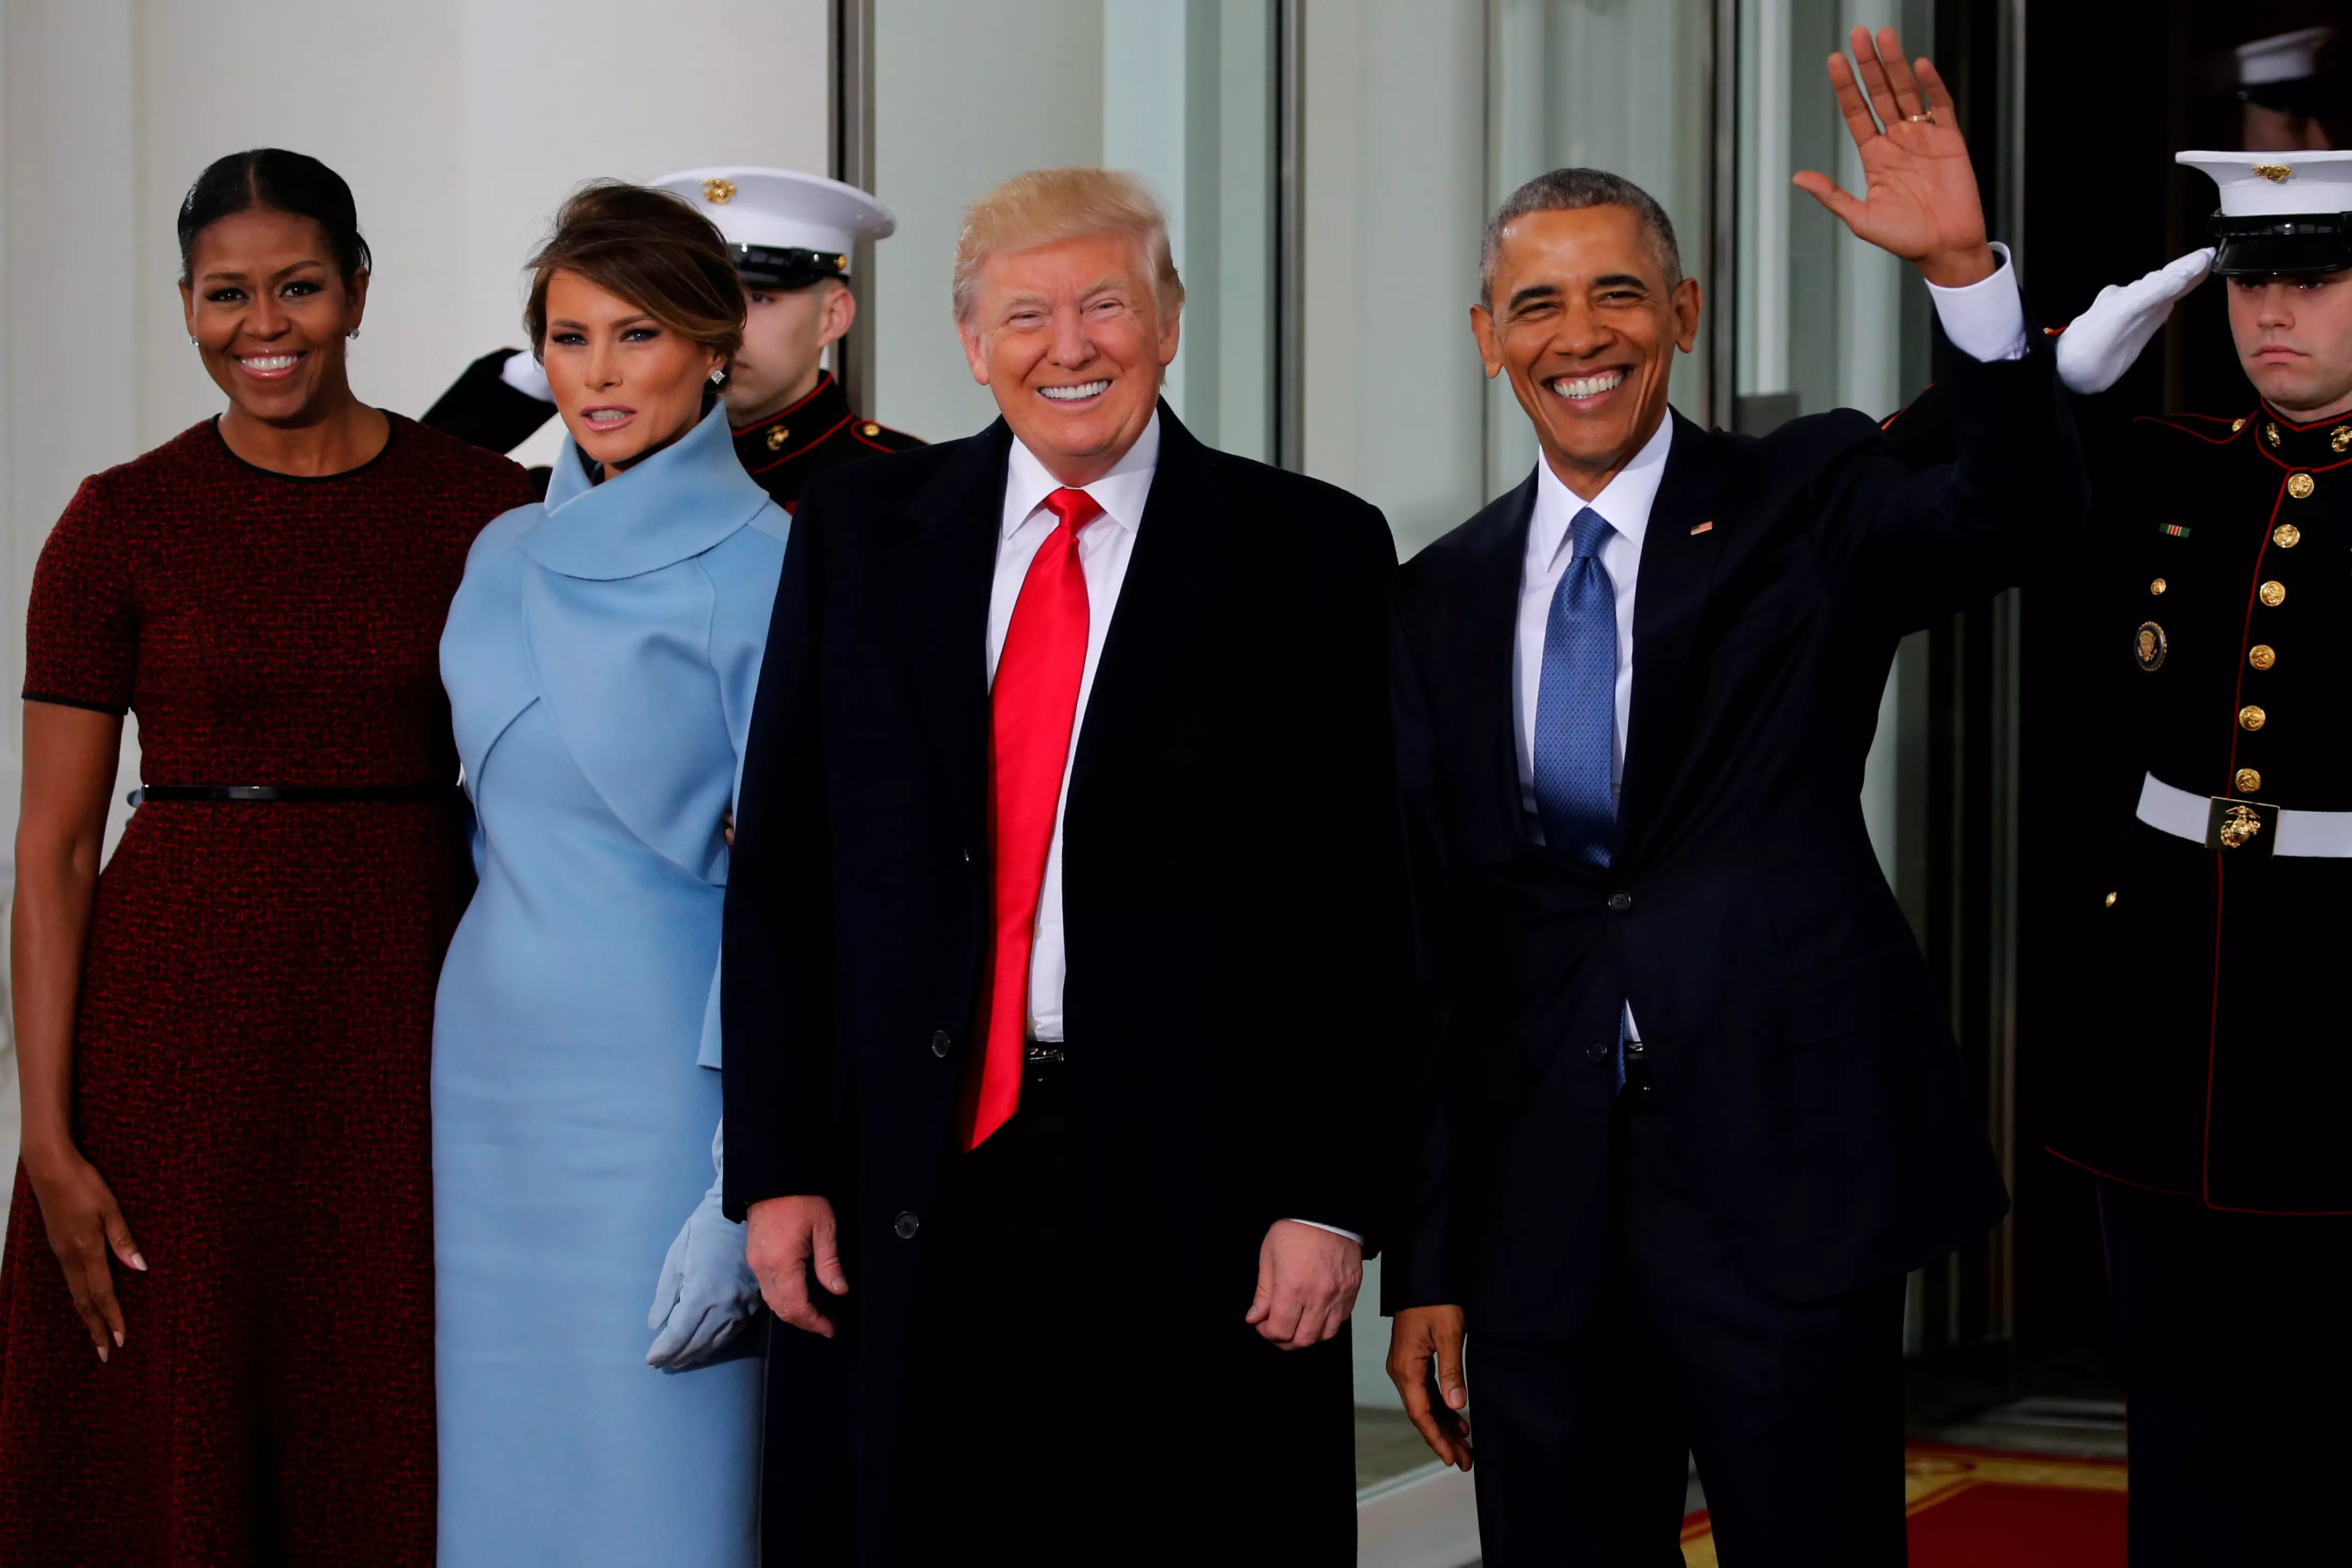 Мишель Обама, Мелания Трамп, Дональд Трамп и Барак Обама. Фото: REUTERS/Jonathan Ernst